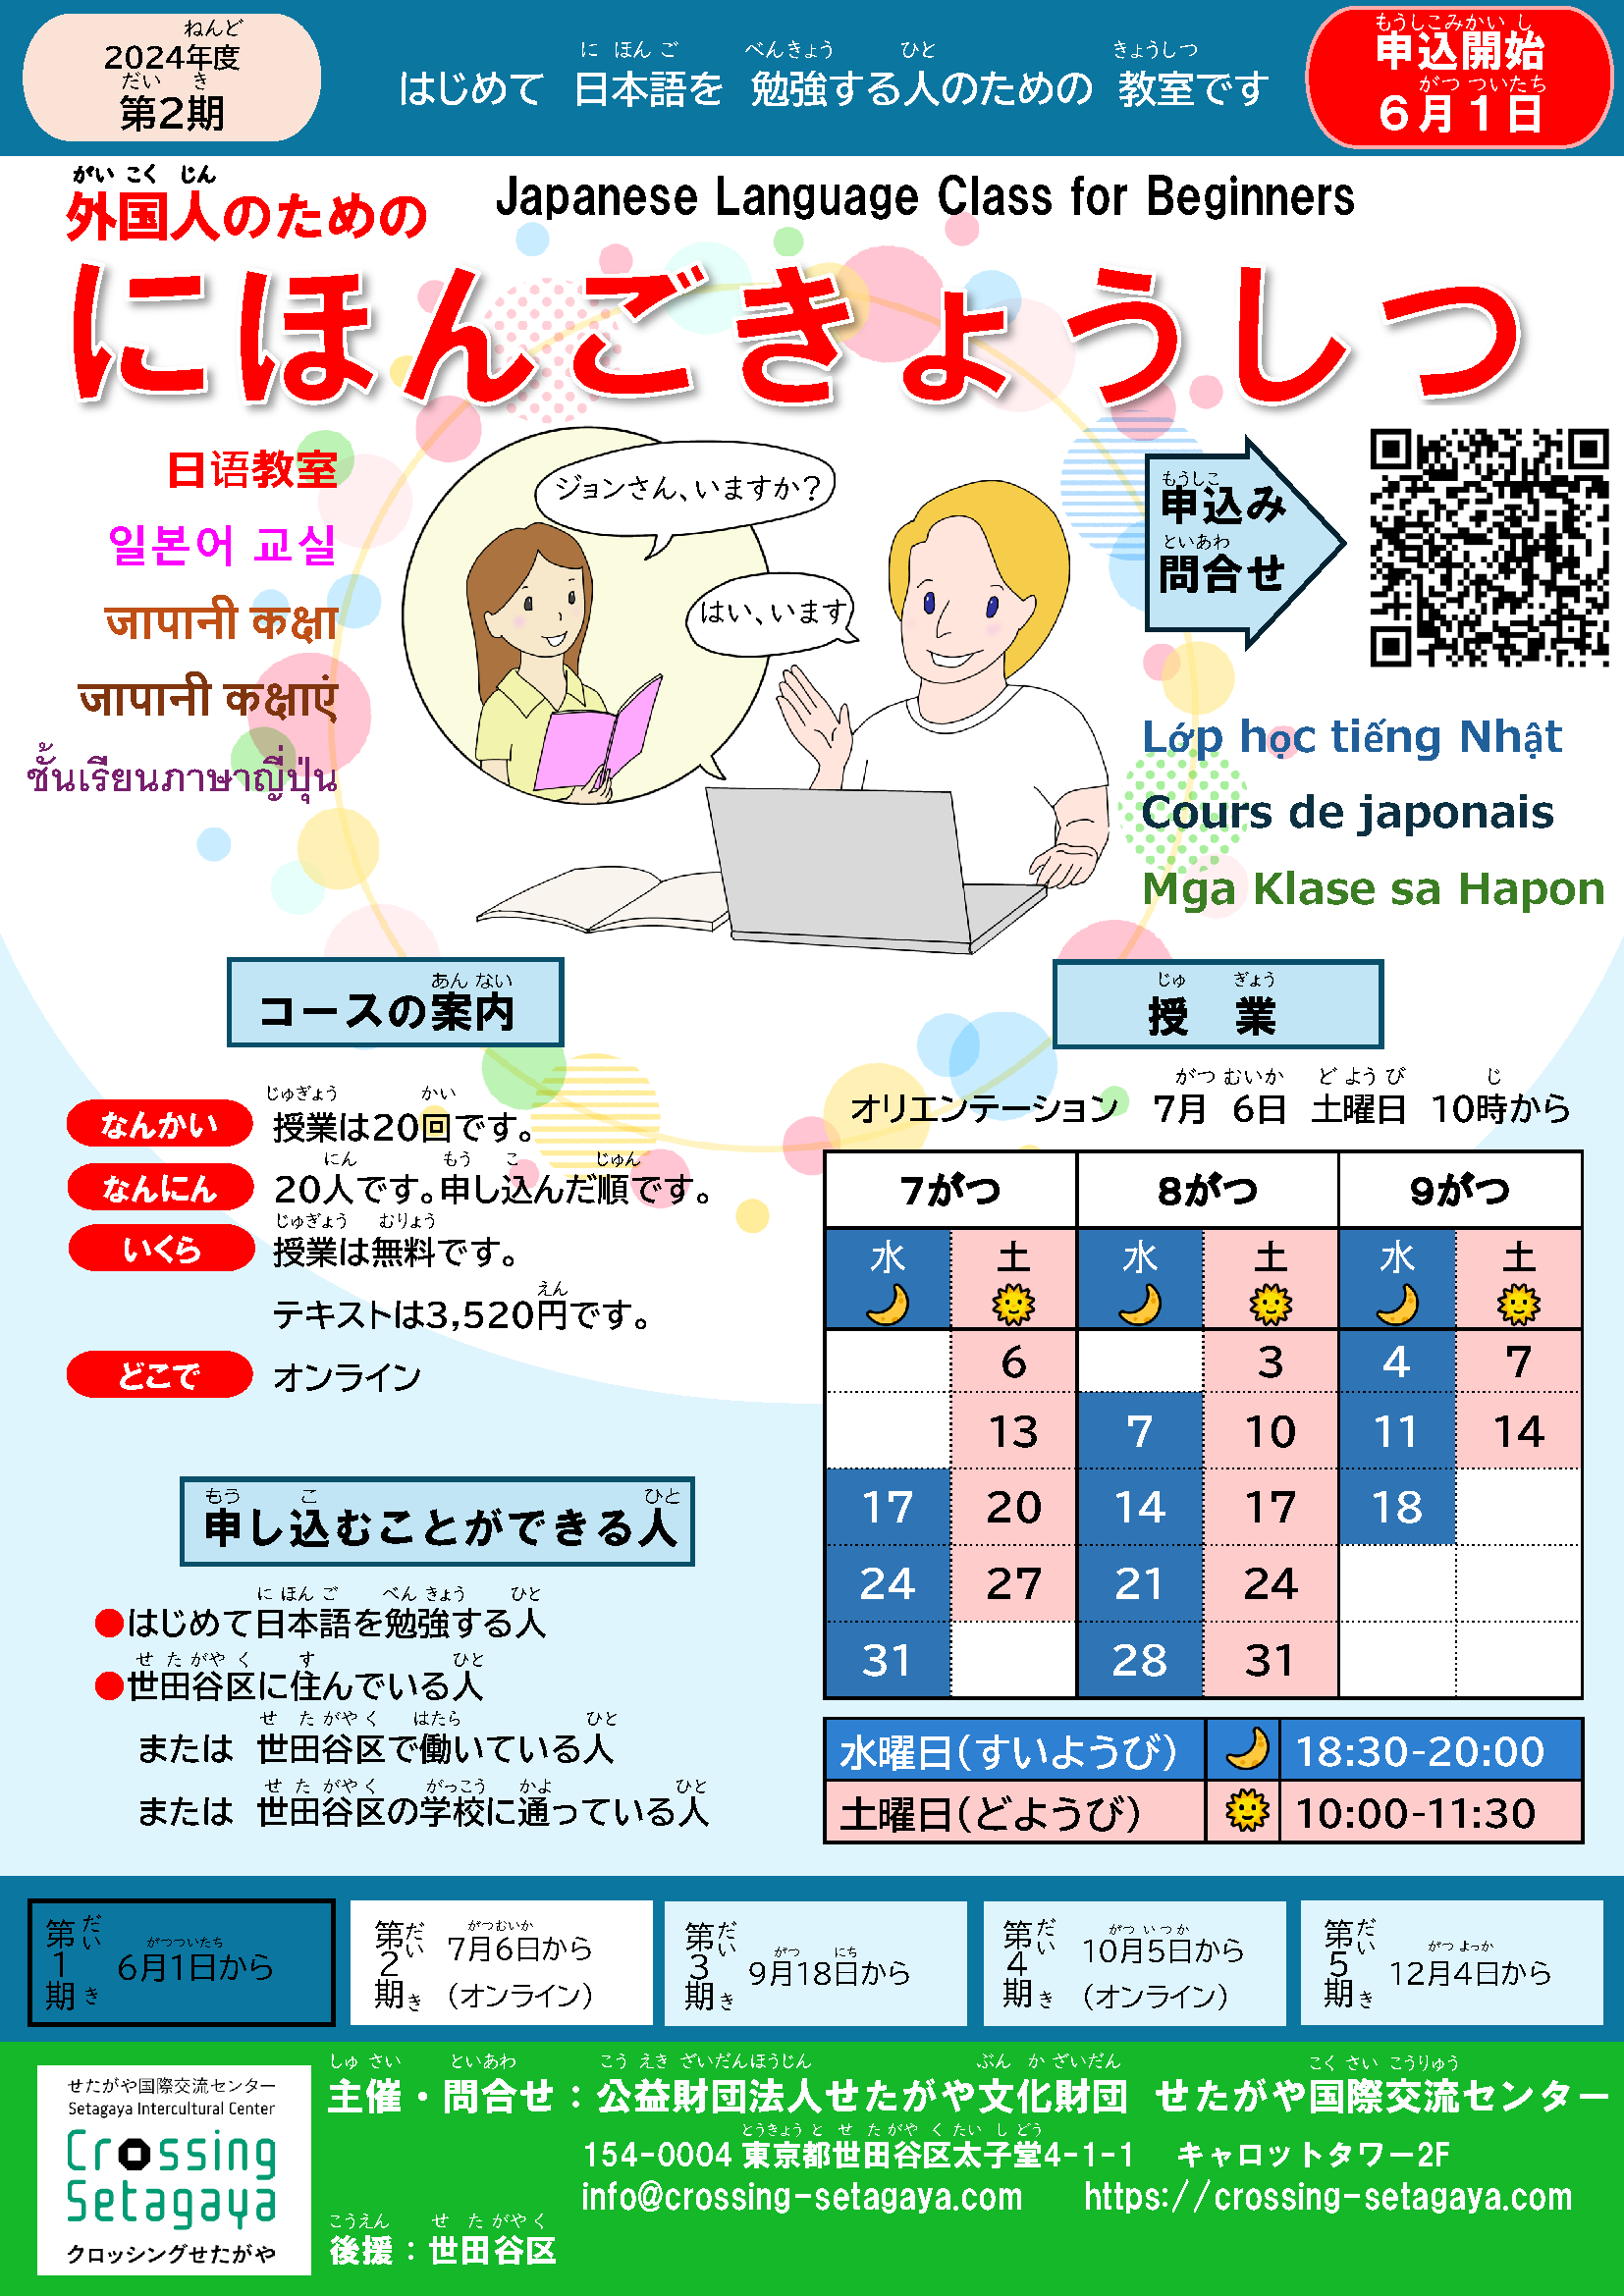 外国人（がいこくじん）のための日本語教室（にほんご きょうしつ）第２期 オンライン/ Japanese Language Class for Beginners  2nd Term Online